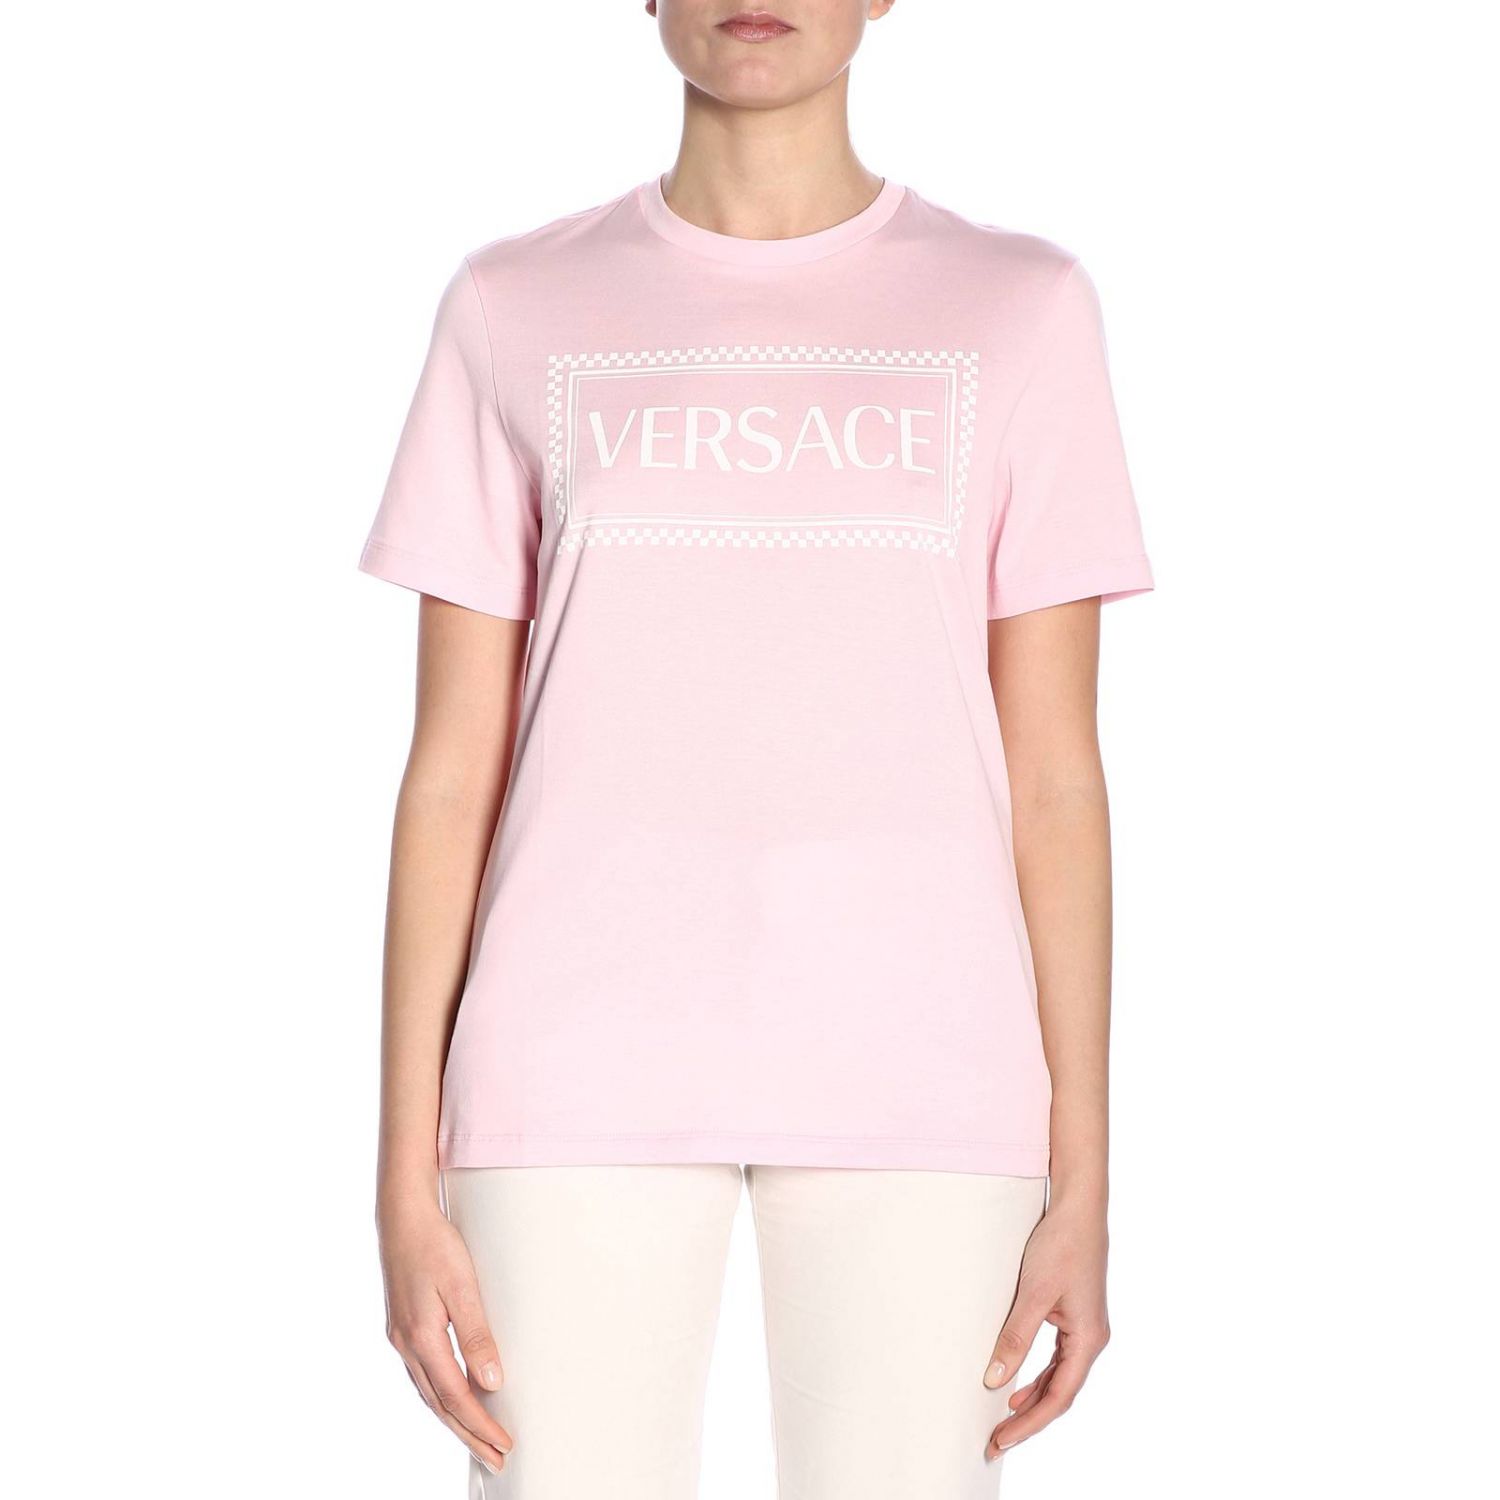 Versace Outlet: T-shirt women | T-Shirt Versace Women Pink | T-Shirt ...